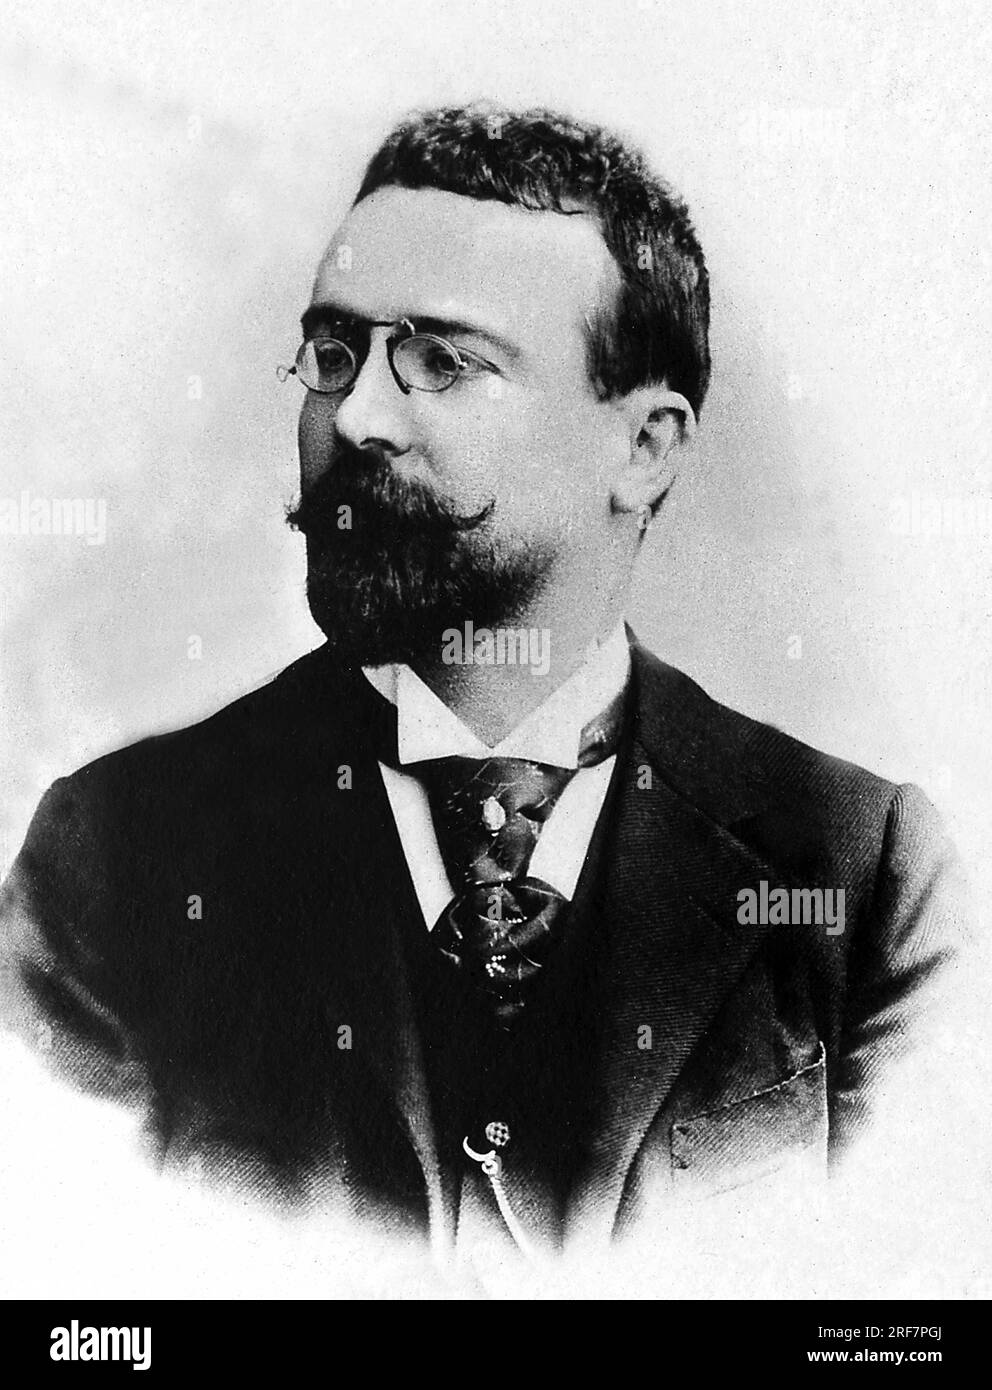 Portrait de Jean Louis Barthou, (1862-1934), avocat, academicien et homme politique francais. Foto Stock